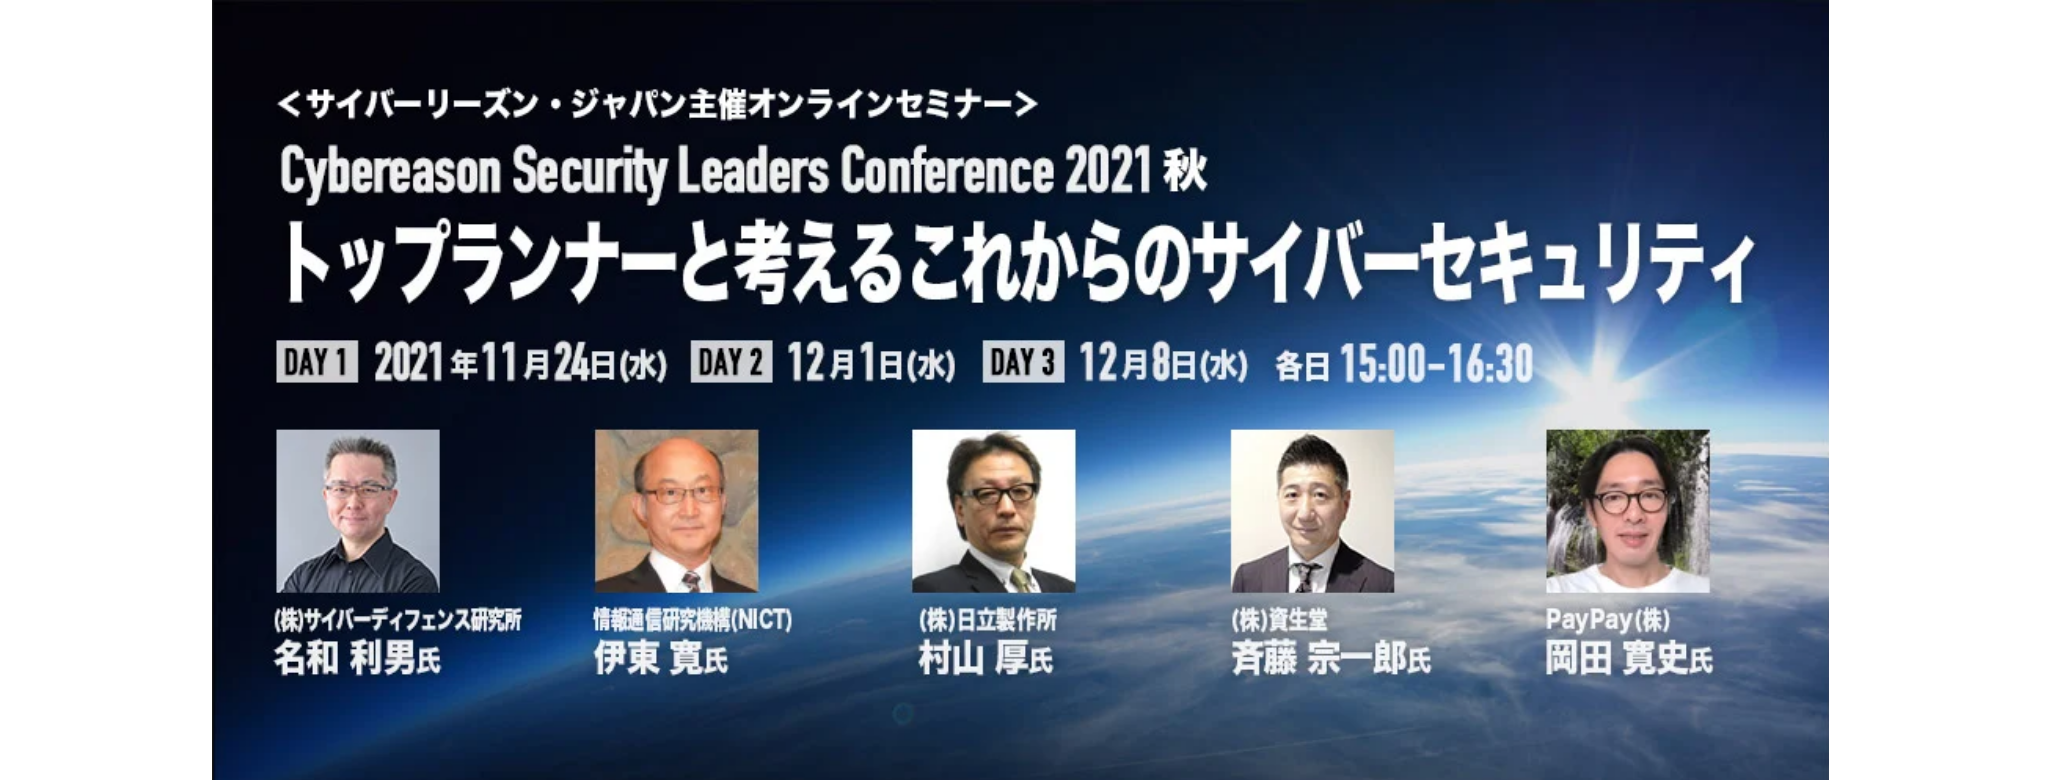  Cybereason Security Leaders Conference 2021秋トップランナーと考えるこれからのサイバーセキュリティ 